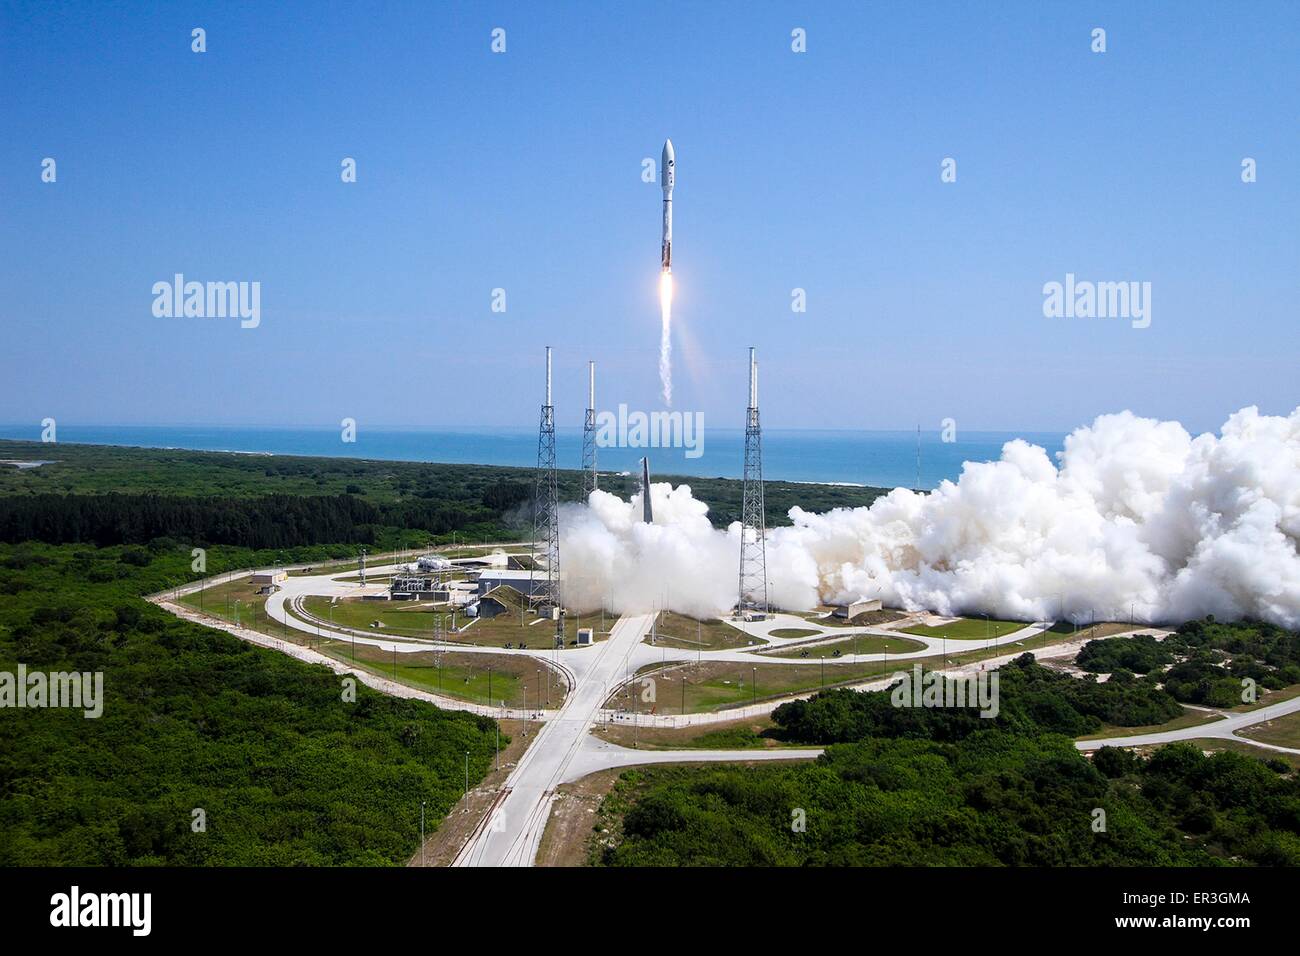 Die US Air Force Space und Missile Systems Center startet die AFSPC-5 Mission an Bord der United Launch Alliance Atlas V-Rakete 20. Mai 2015 in Cape Canaveral, Florida. Die Atlas V-Rakete durchgeführt in Low Earth Orbit eine X-37 b Orbital Test Vehicle, Kennzeichnung der vierten Raumflug für das X-37 b-Programm. Stockfoto